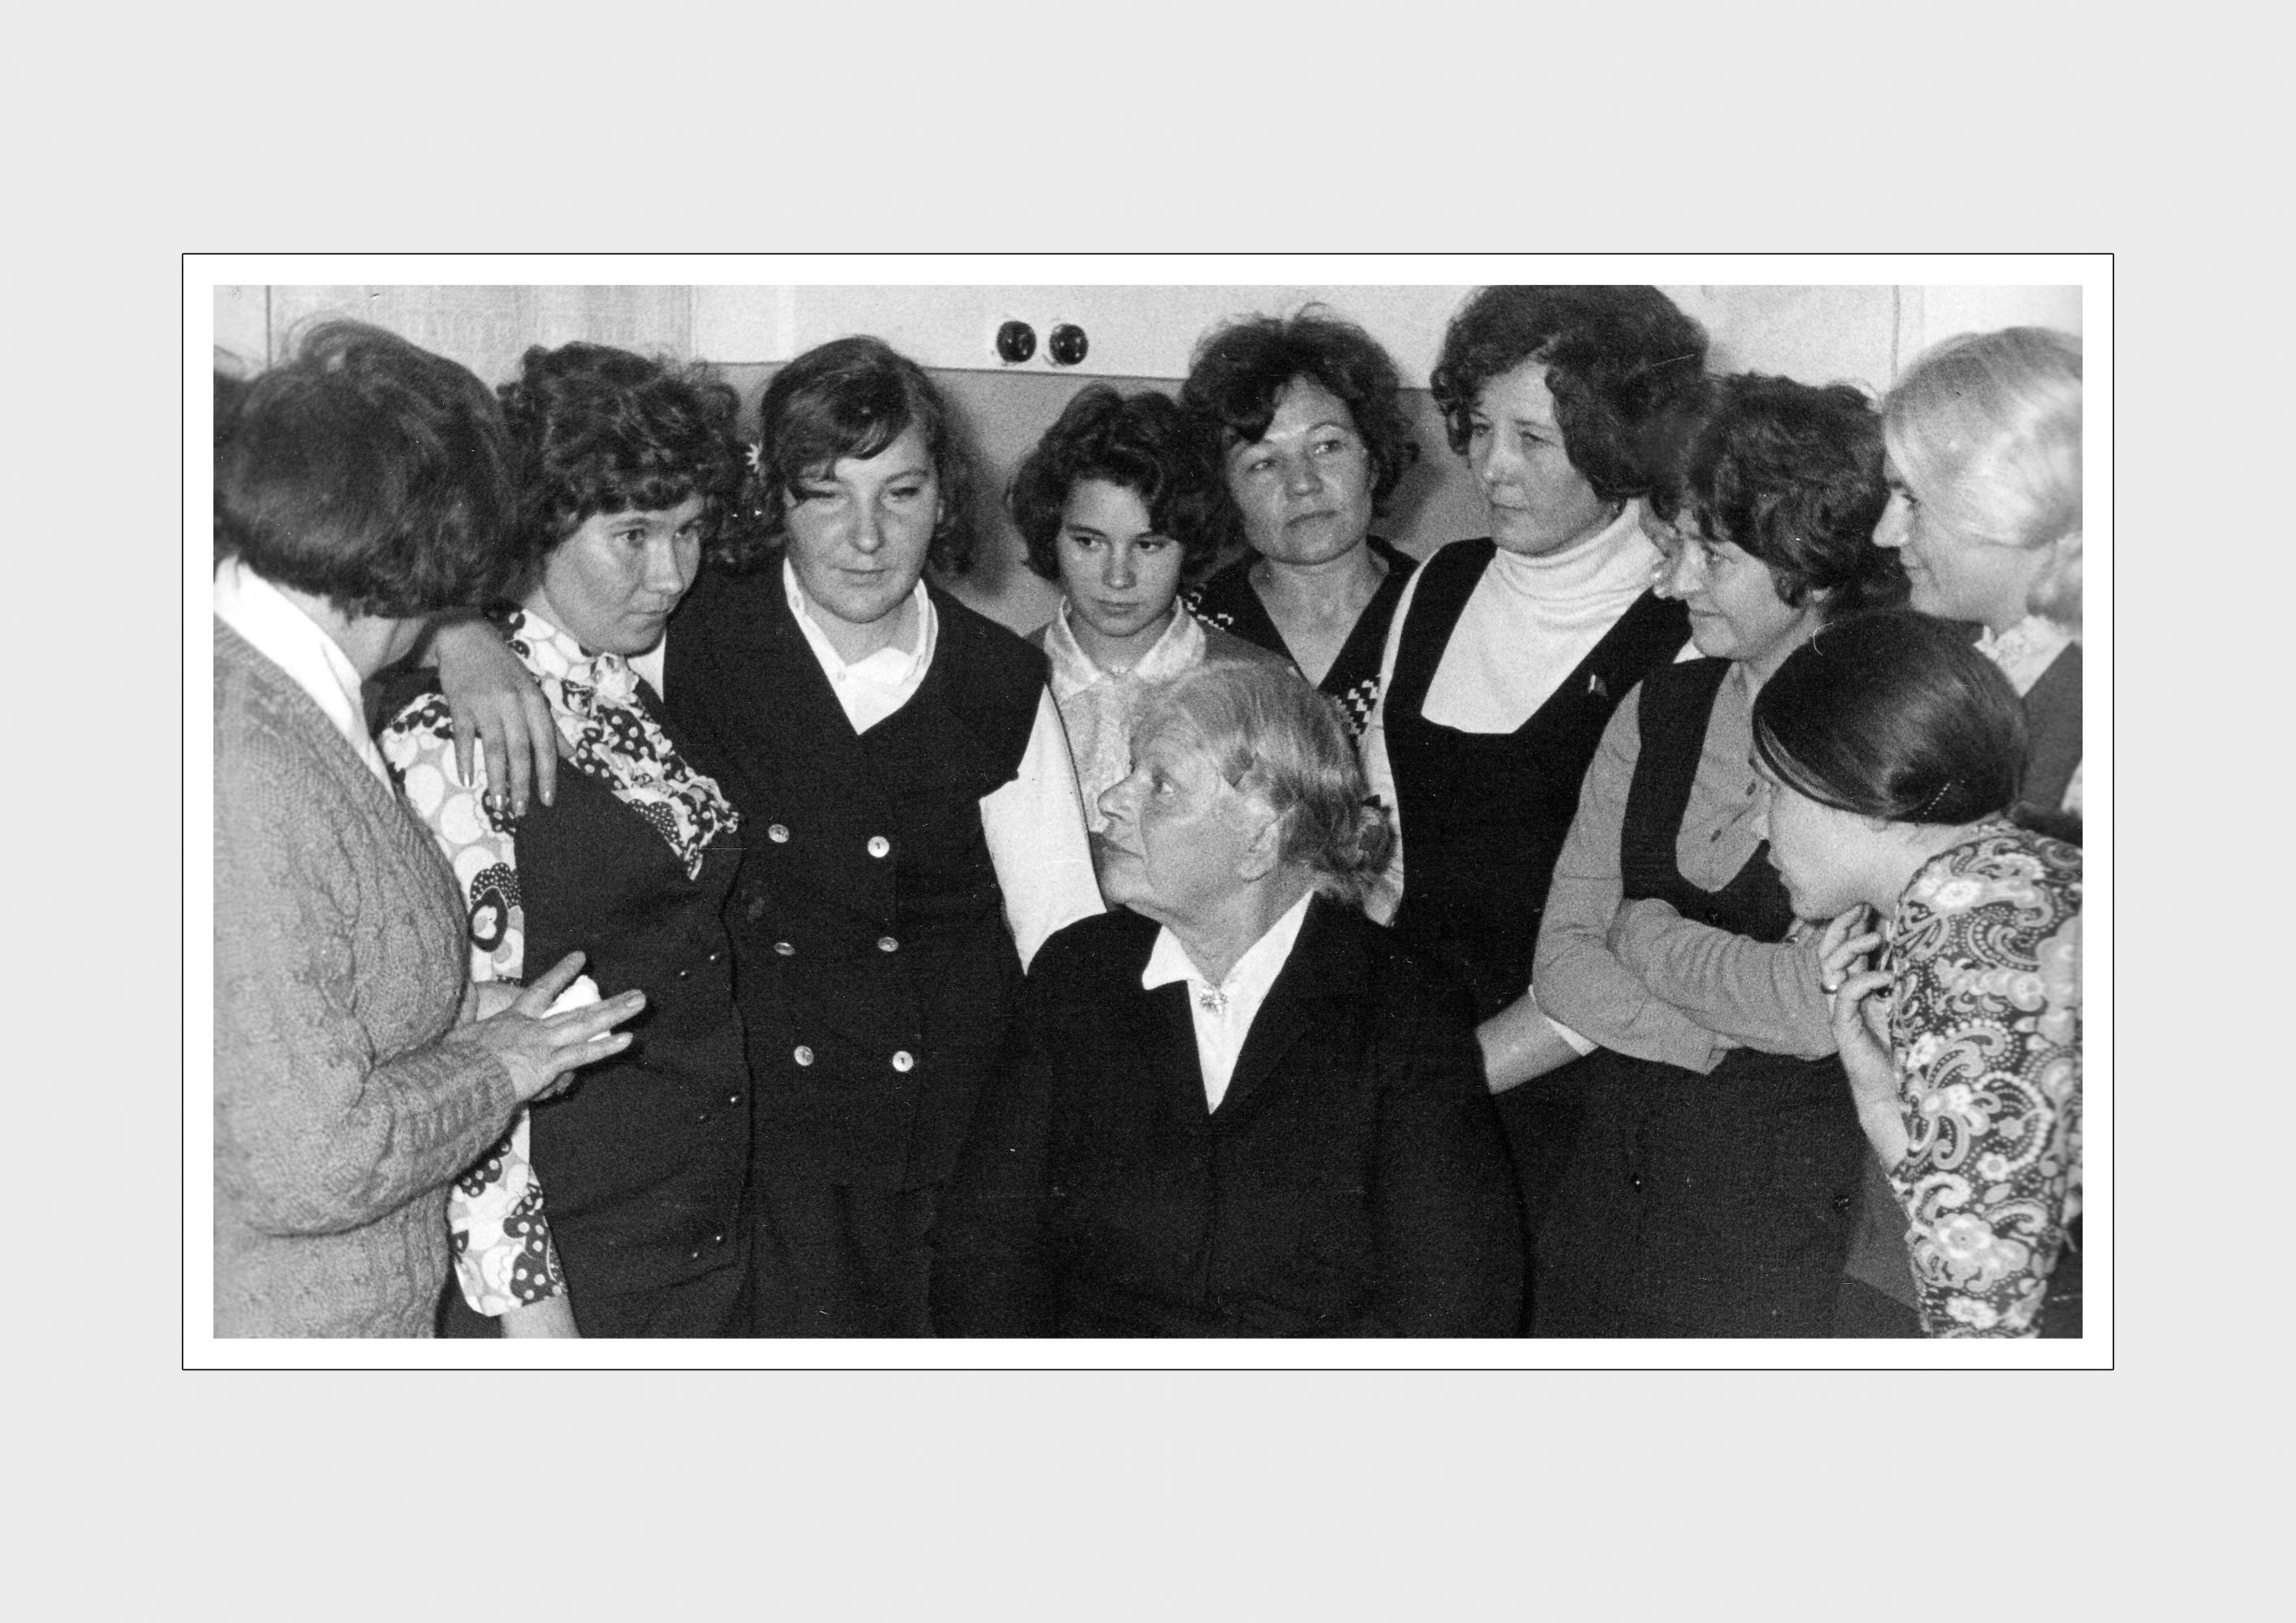 Крогиус Ф. В. с молодыми сотрудниками
1971 г.